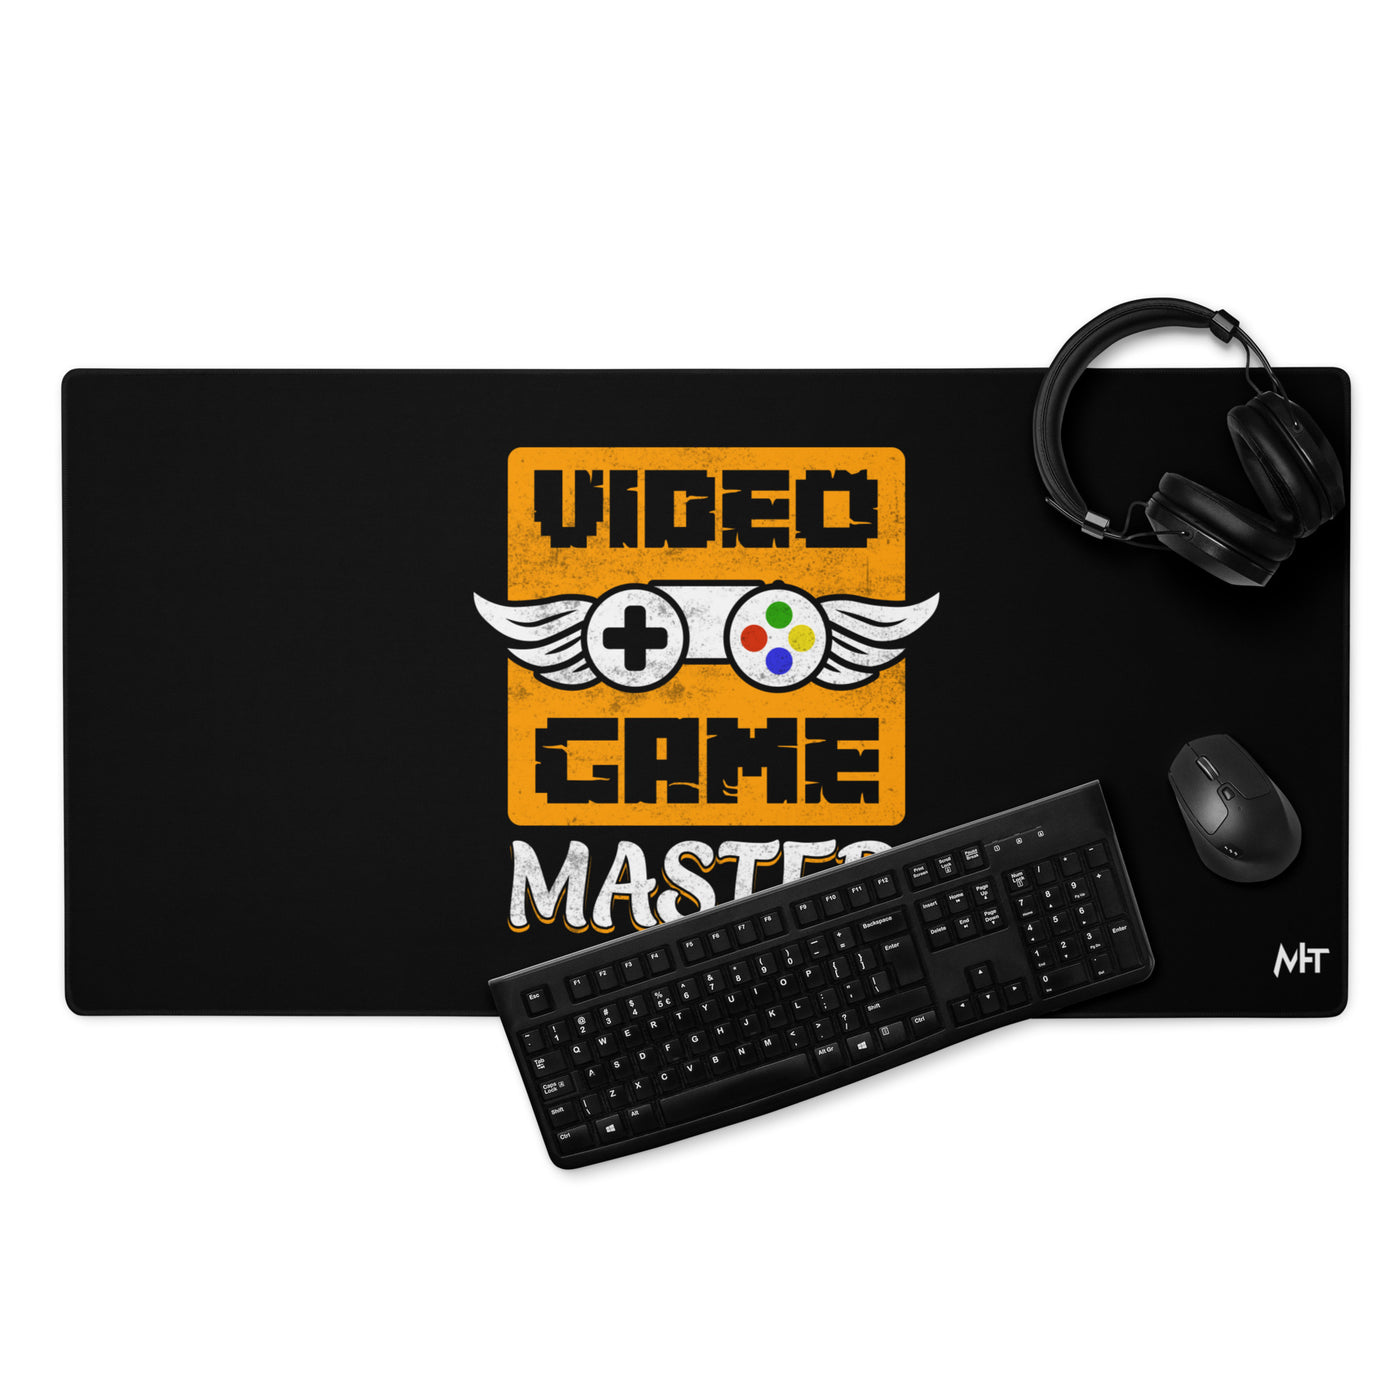 VIDEO GAME MASTER (MAHFUZ) - Desk Mat